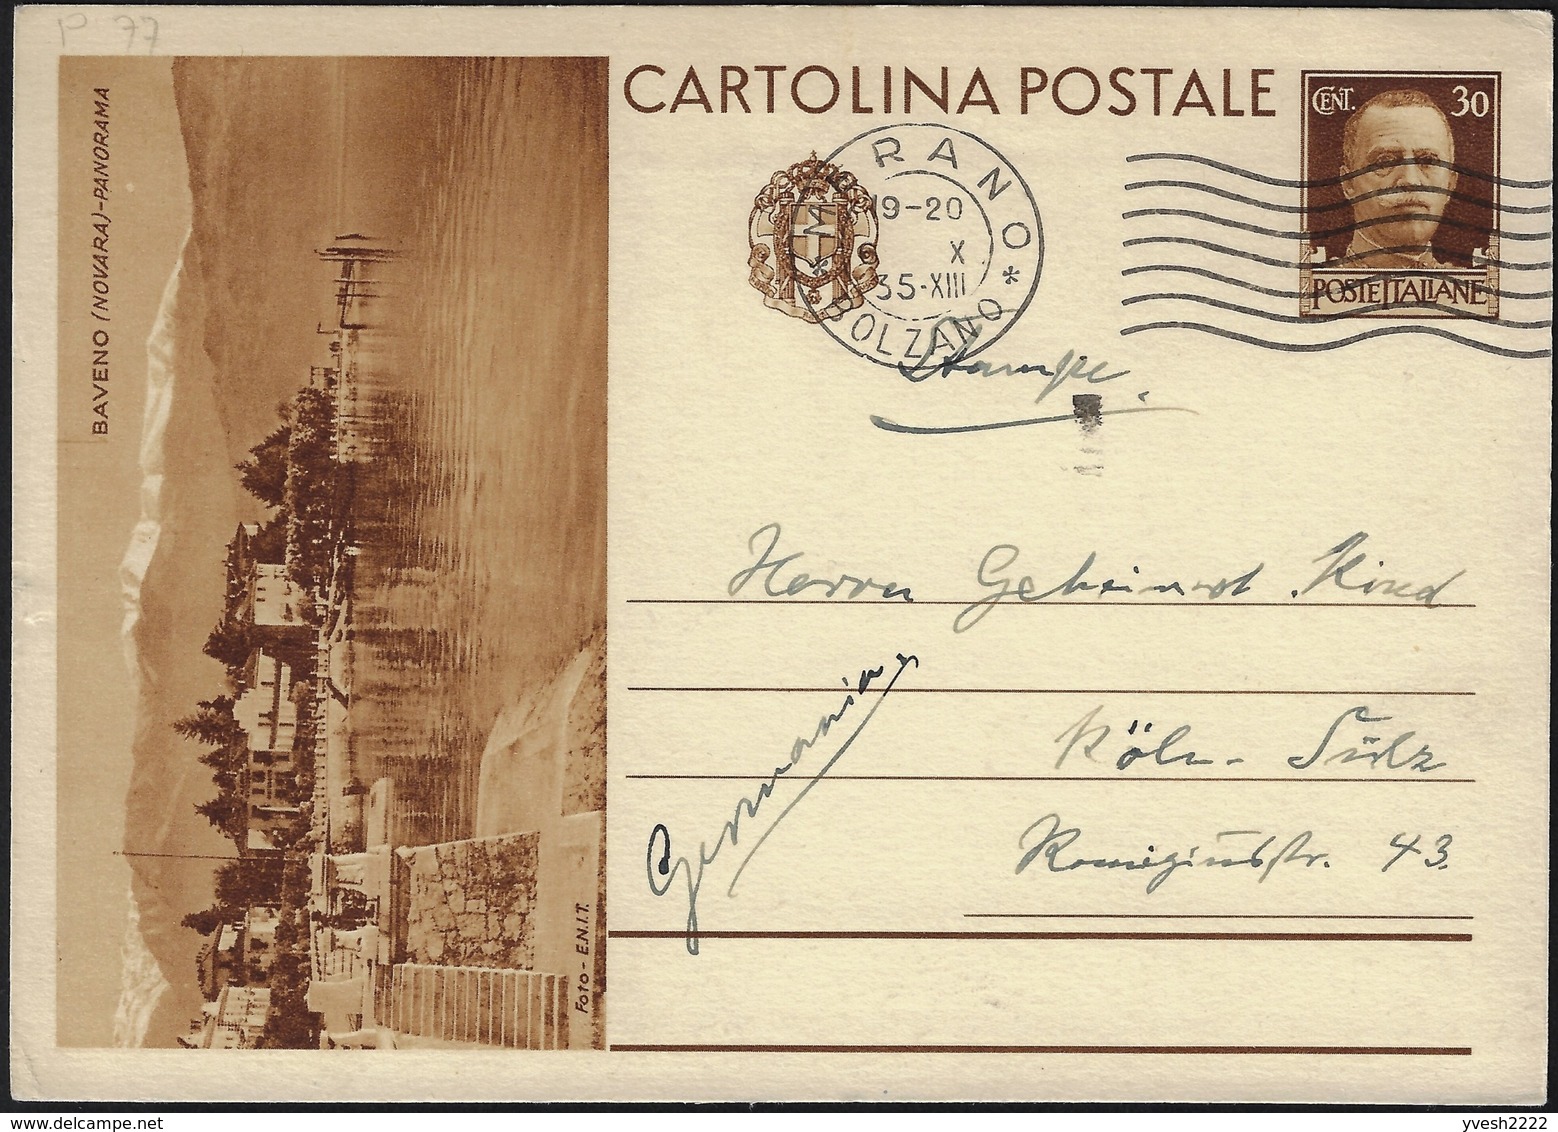 Italie 1935. 2 Entiers Postaux Envoyés à L'étranger. 2 Tirages. Baveno, Alpes, Montagnes, Verbano-Cusio-Ossola - Berge